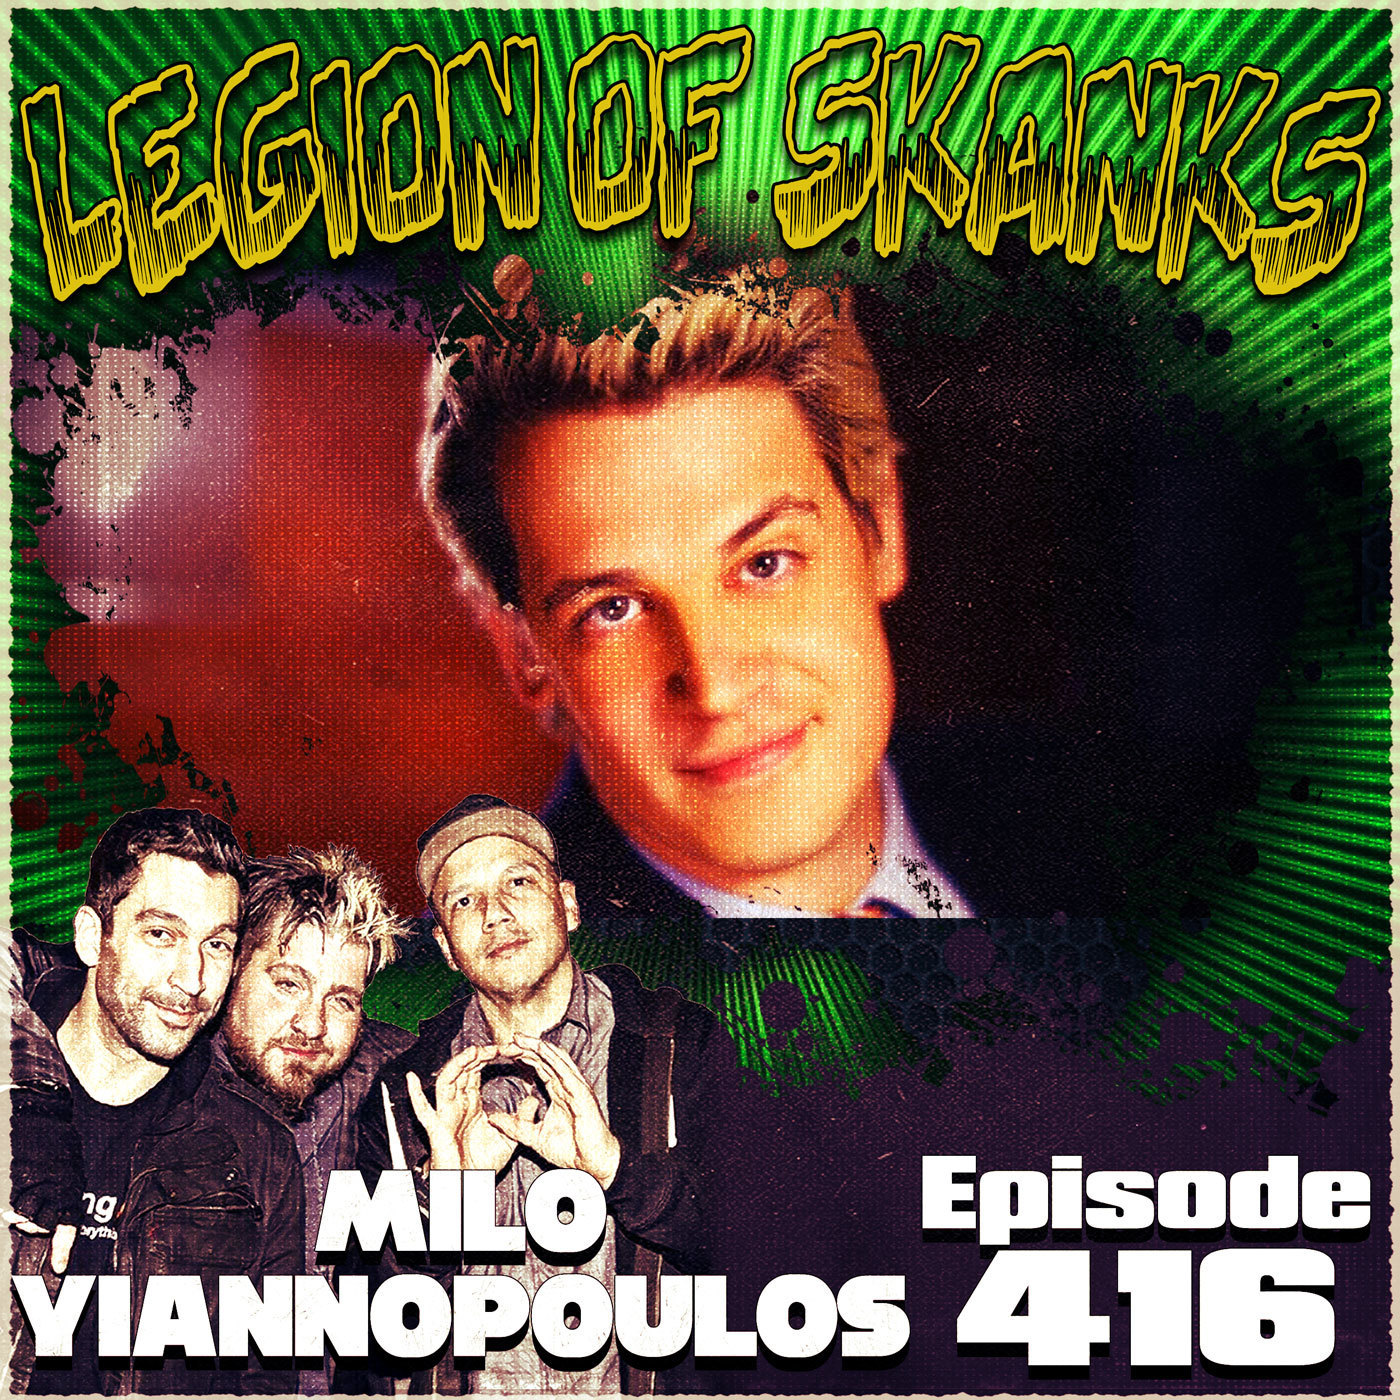 Legion of skanks podcast